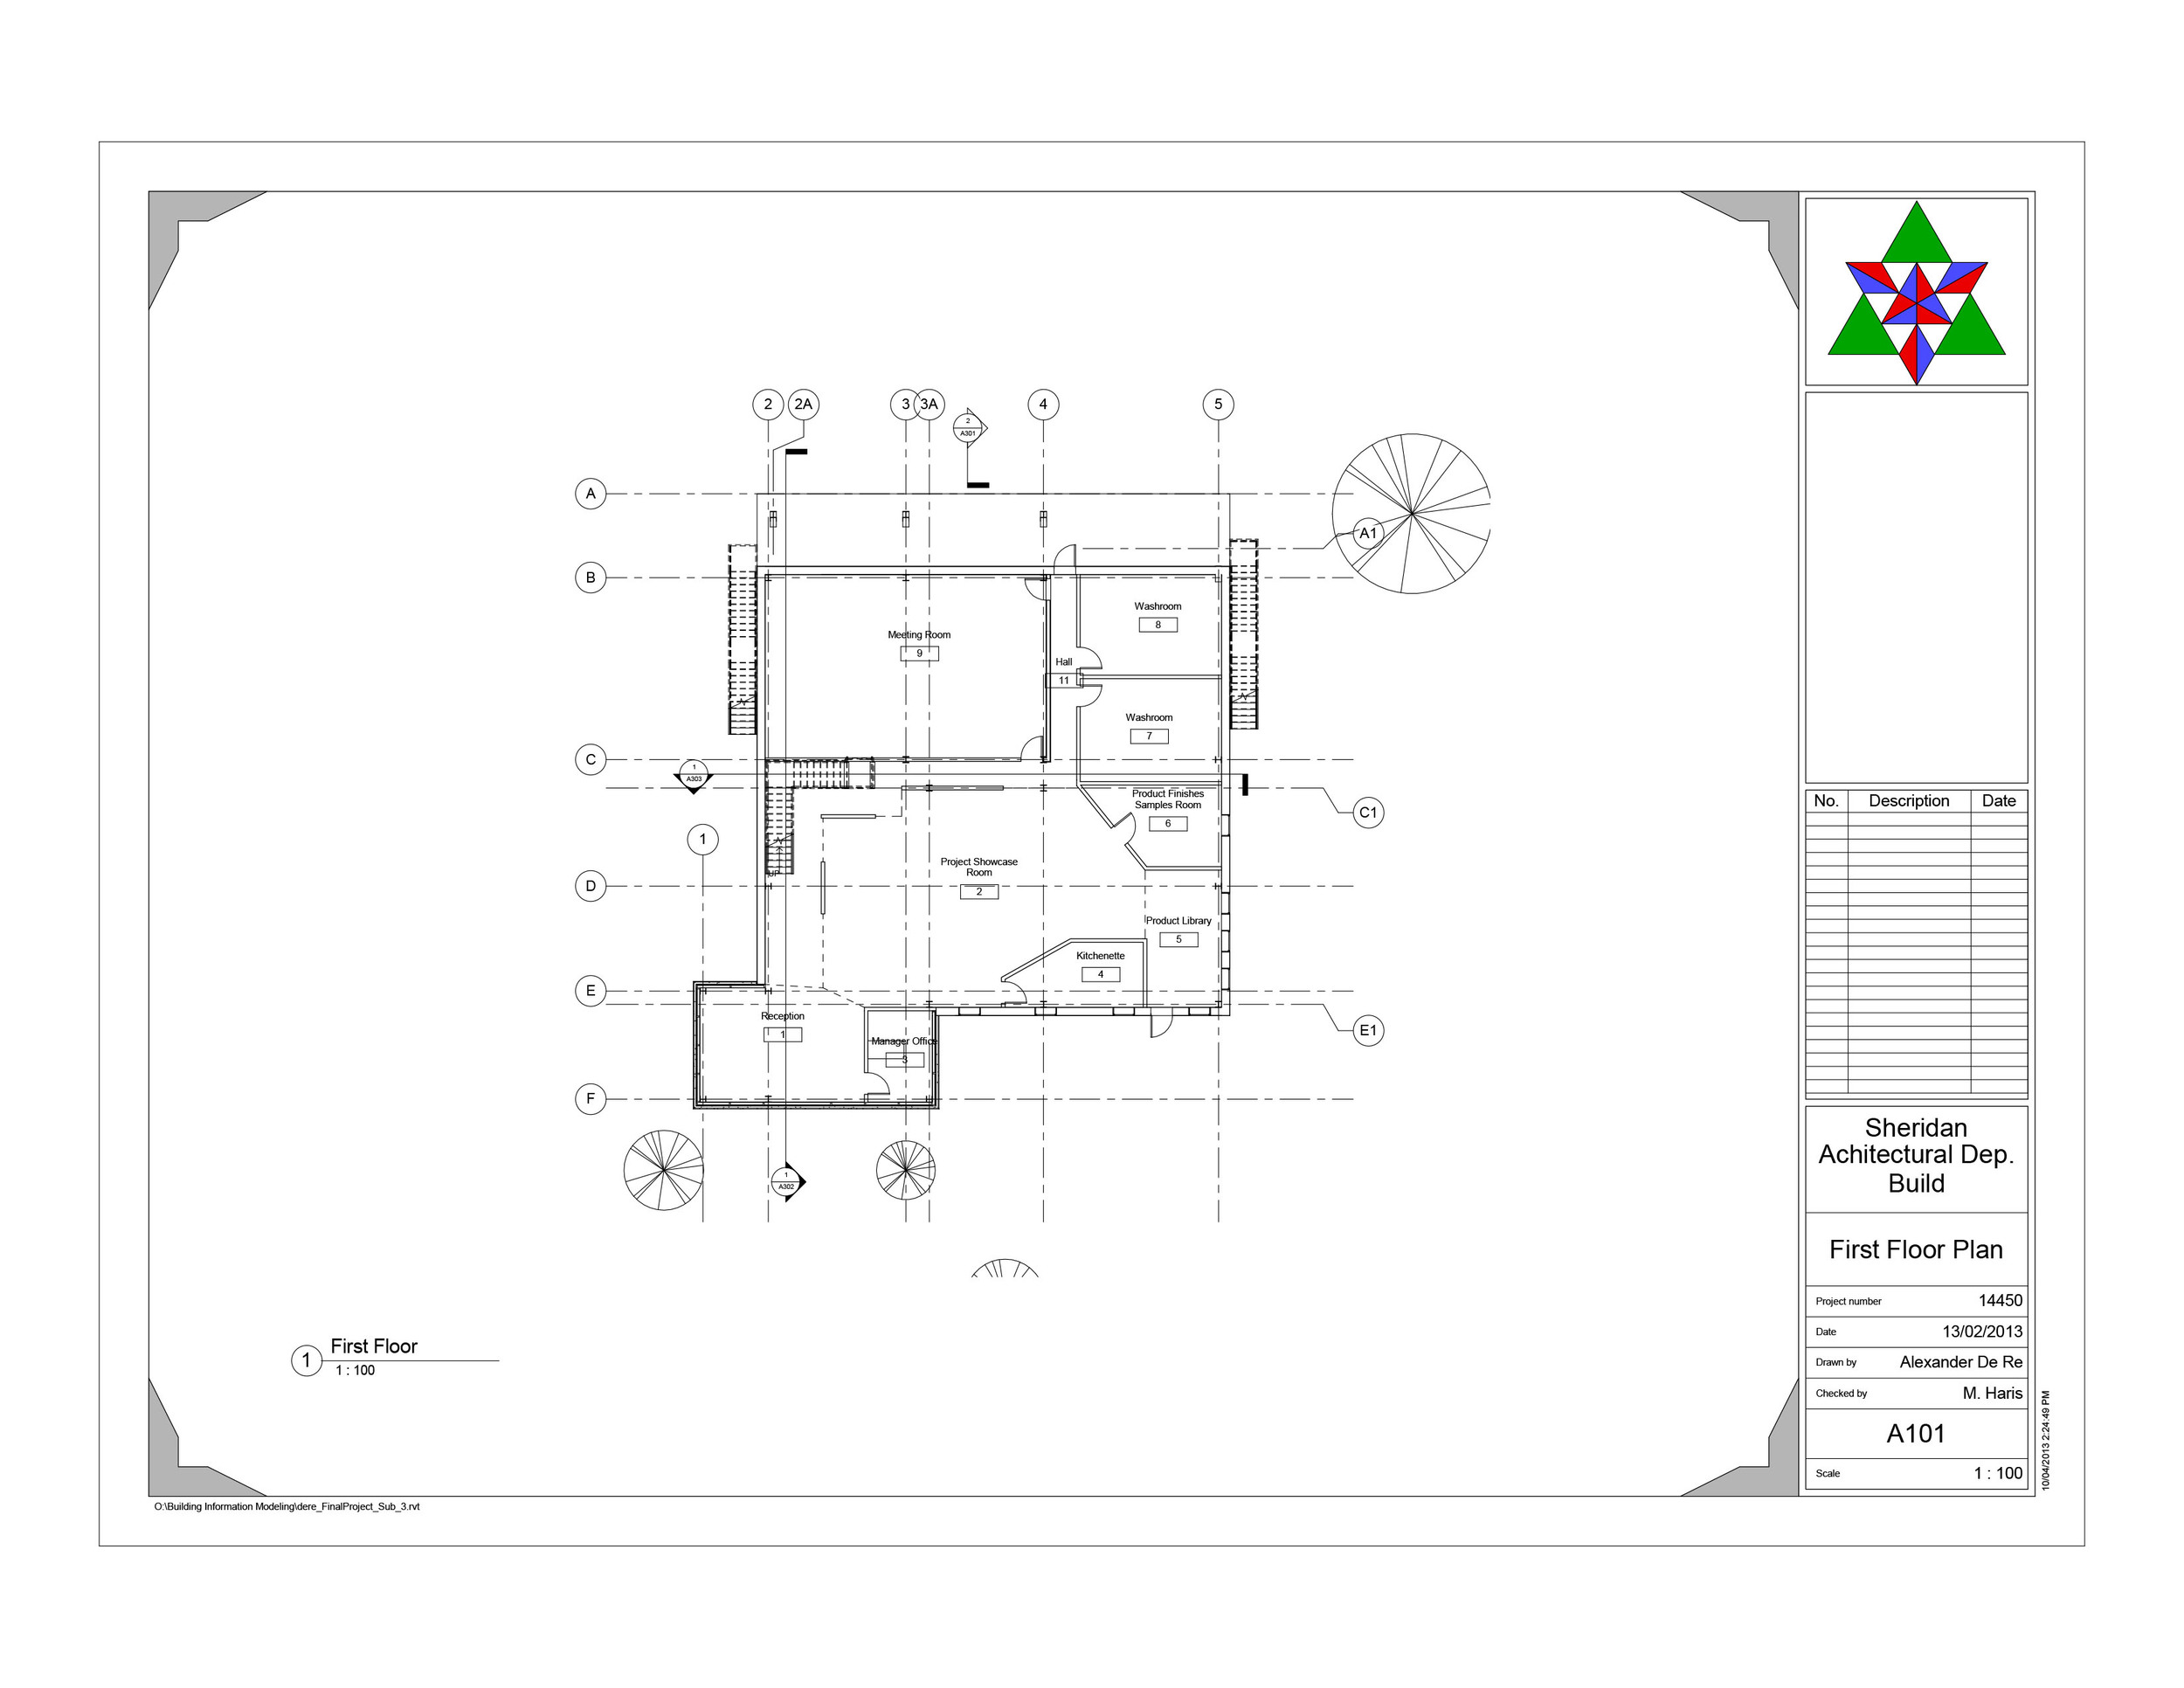 dere_FinalProject  - Sheet - A101 - First Floor Plan.jpg